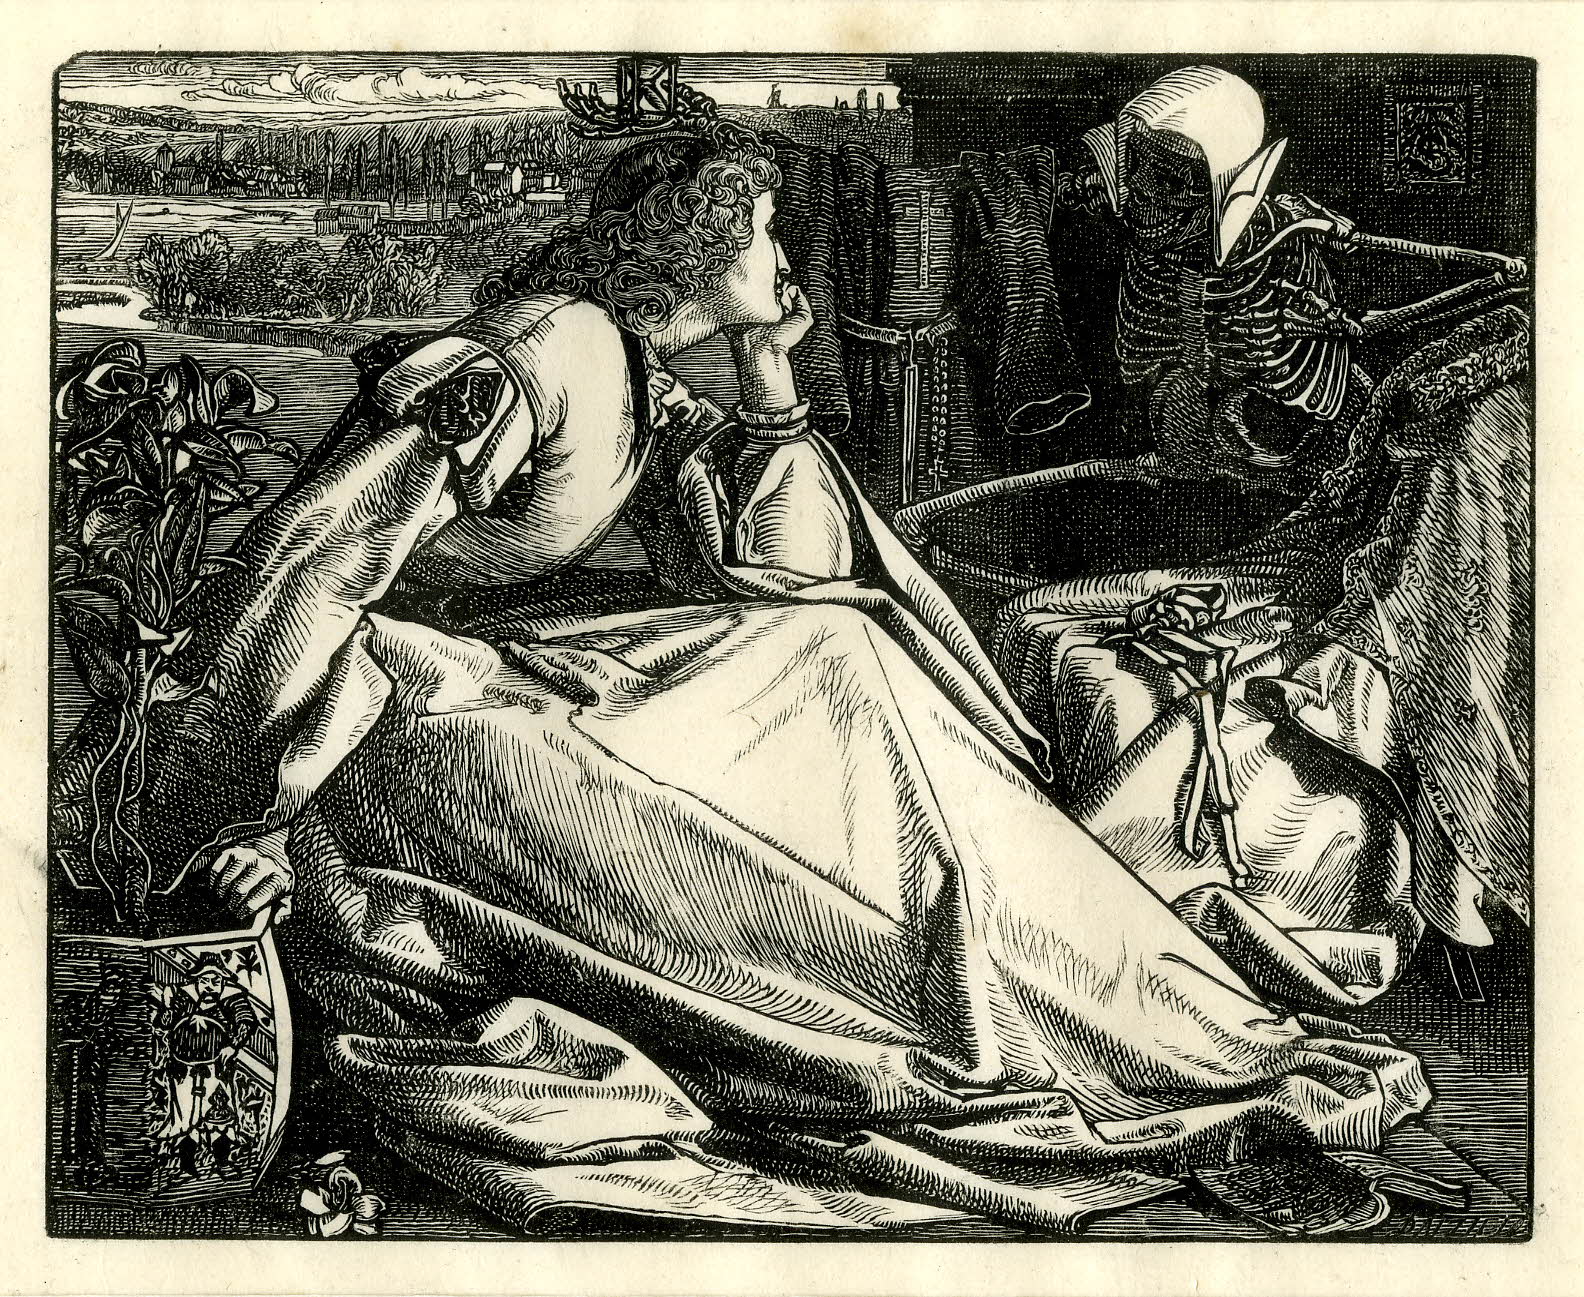 Bis zu ihrem Tode by Frederick Augustus Sandys - 1862 - 101 x 125 mm British Museum